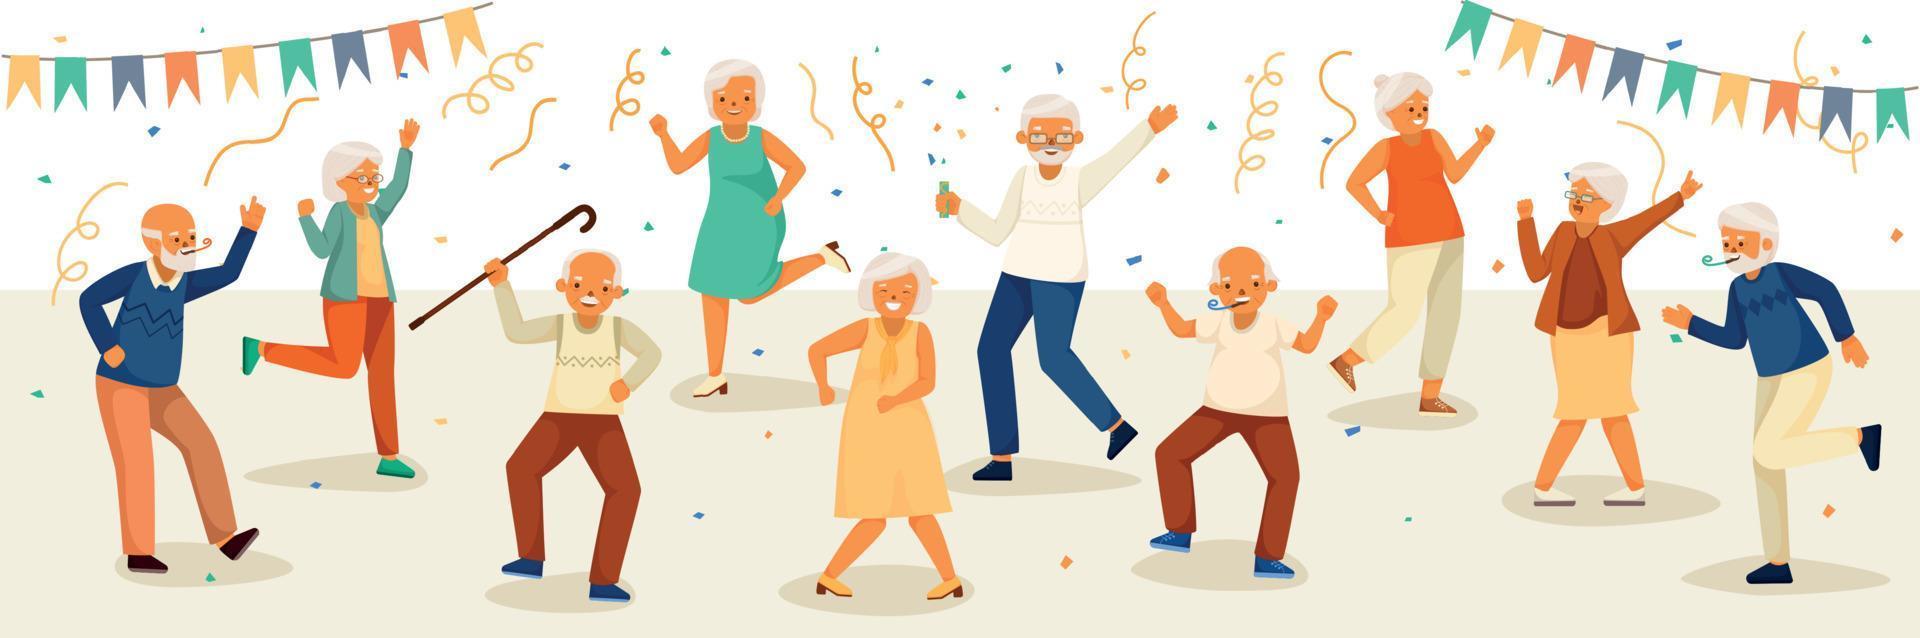 dibujos animados coloreados ancianos composición de la vida feliz vector